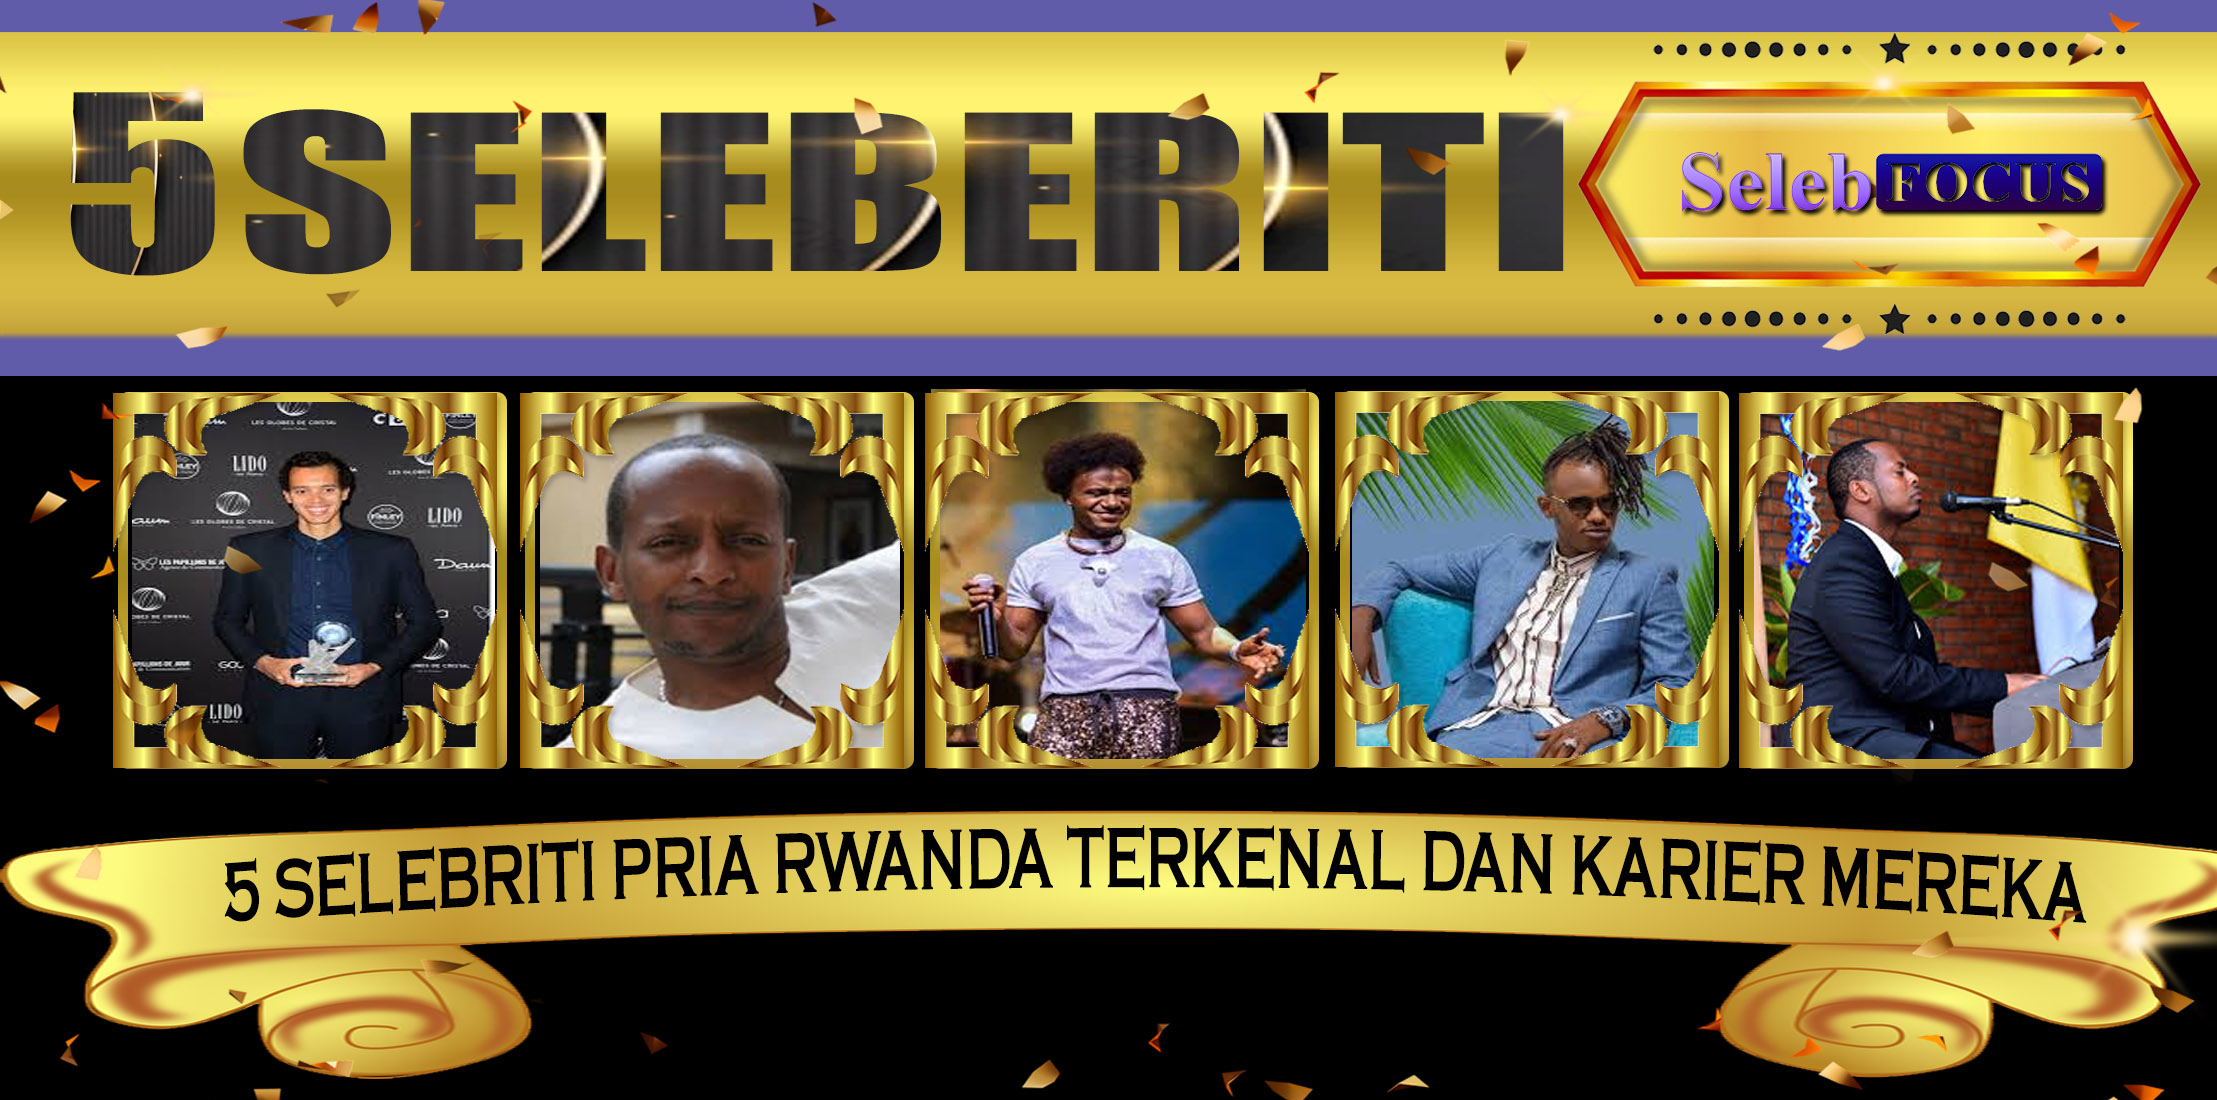 5 Selebriti Pria Rwanda